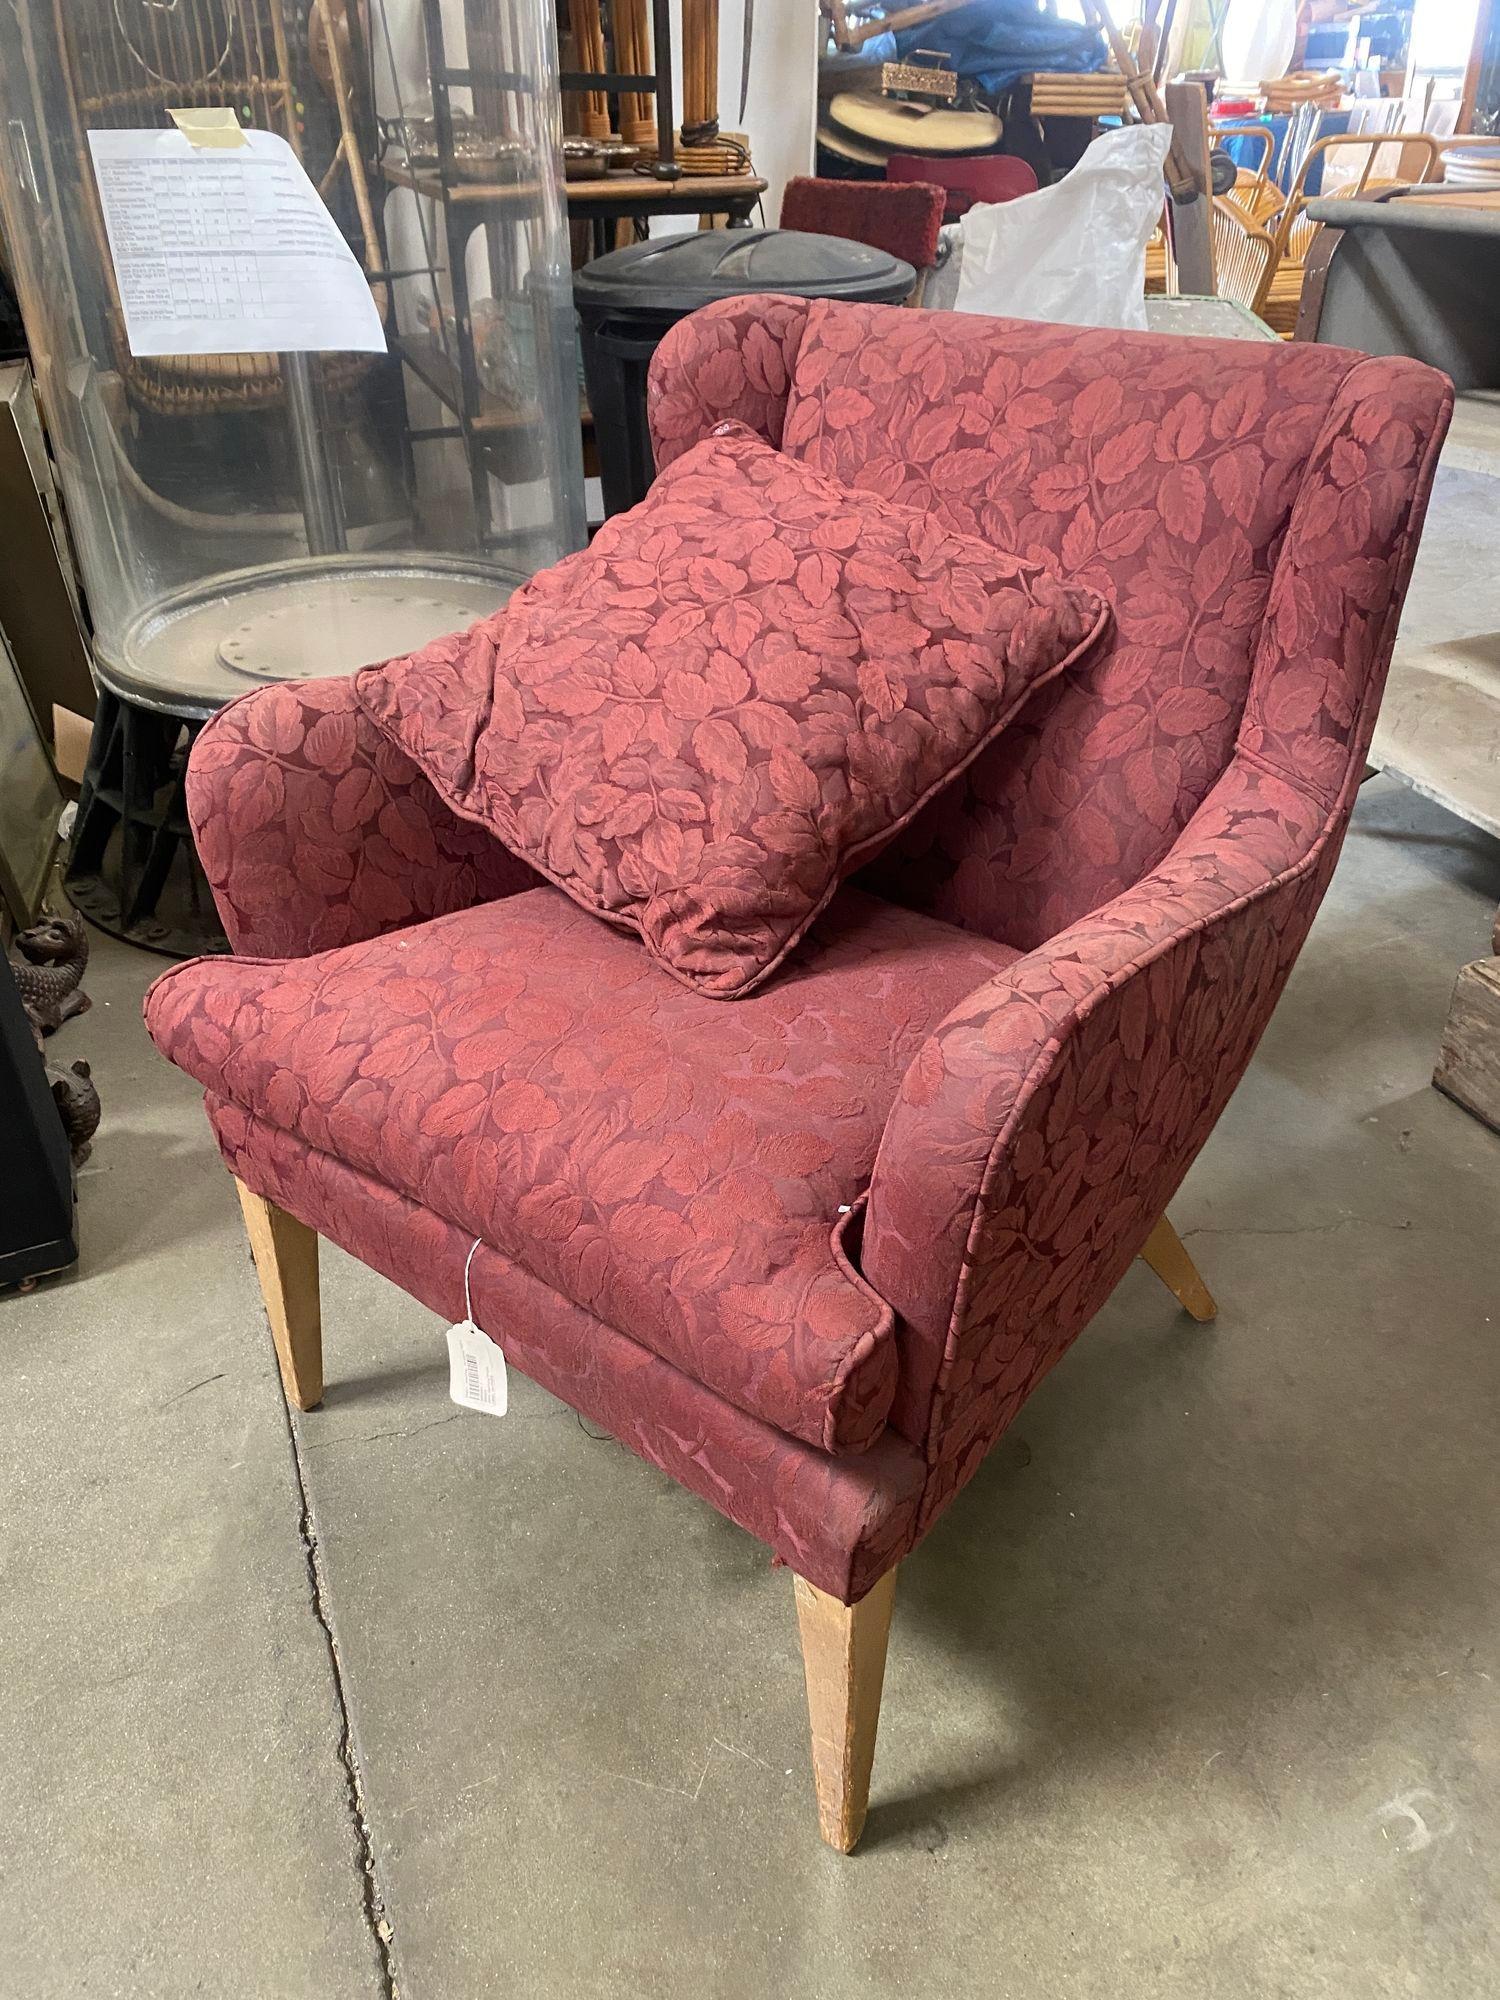 Der Burgundy Wingback Mid-Century Chair ist eine großzügige, stilvolle Mischung aus Vintage und modernem Design. Mit seiner weinroten Polsterung, der geschwungenen Rückenlehne und den spitz zulaufenden Holzbeinen passt er in jeden Raum.

Paar von